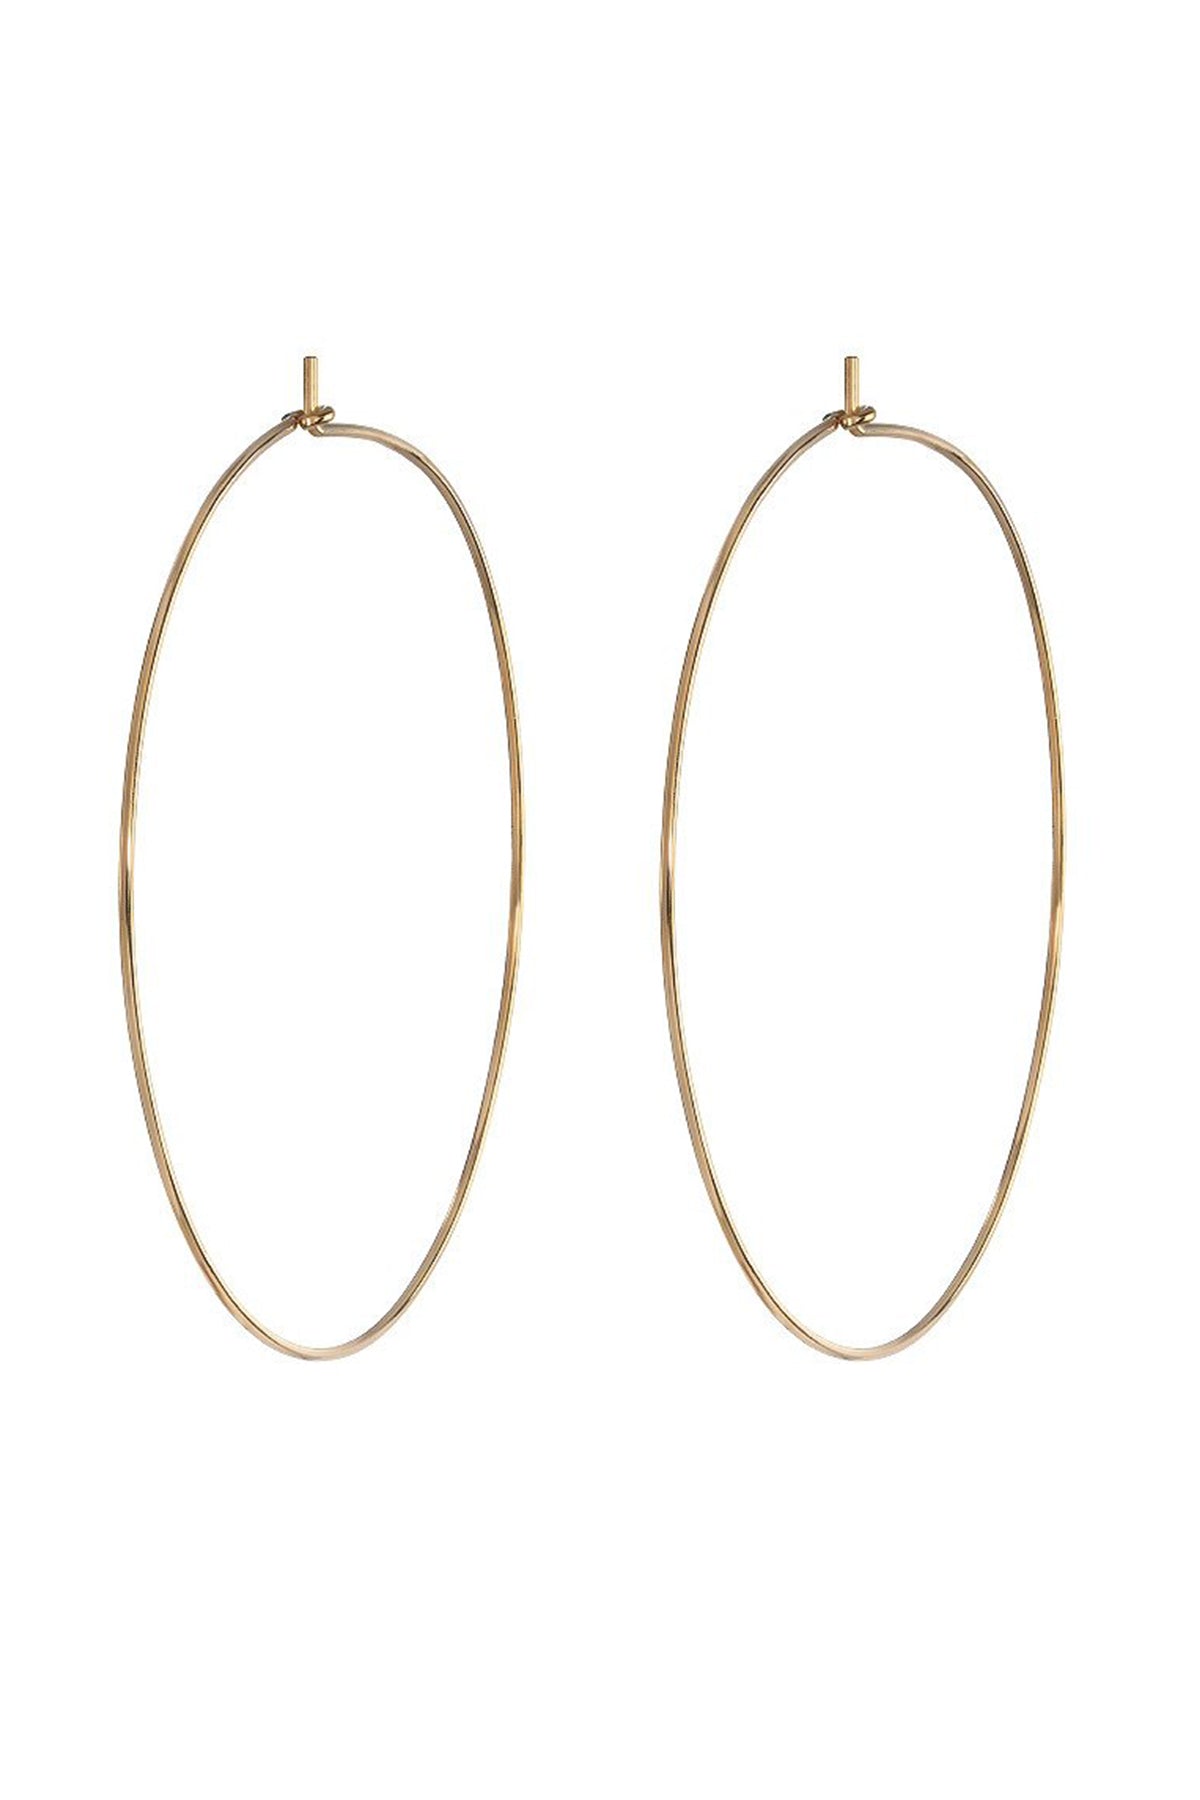 Large Hoop Earrings by Bychari Gold-22386190975169